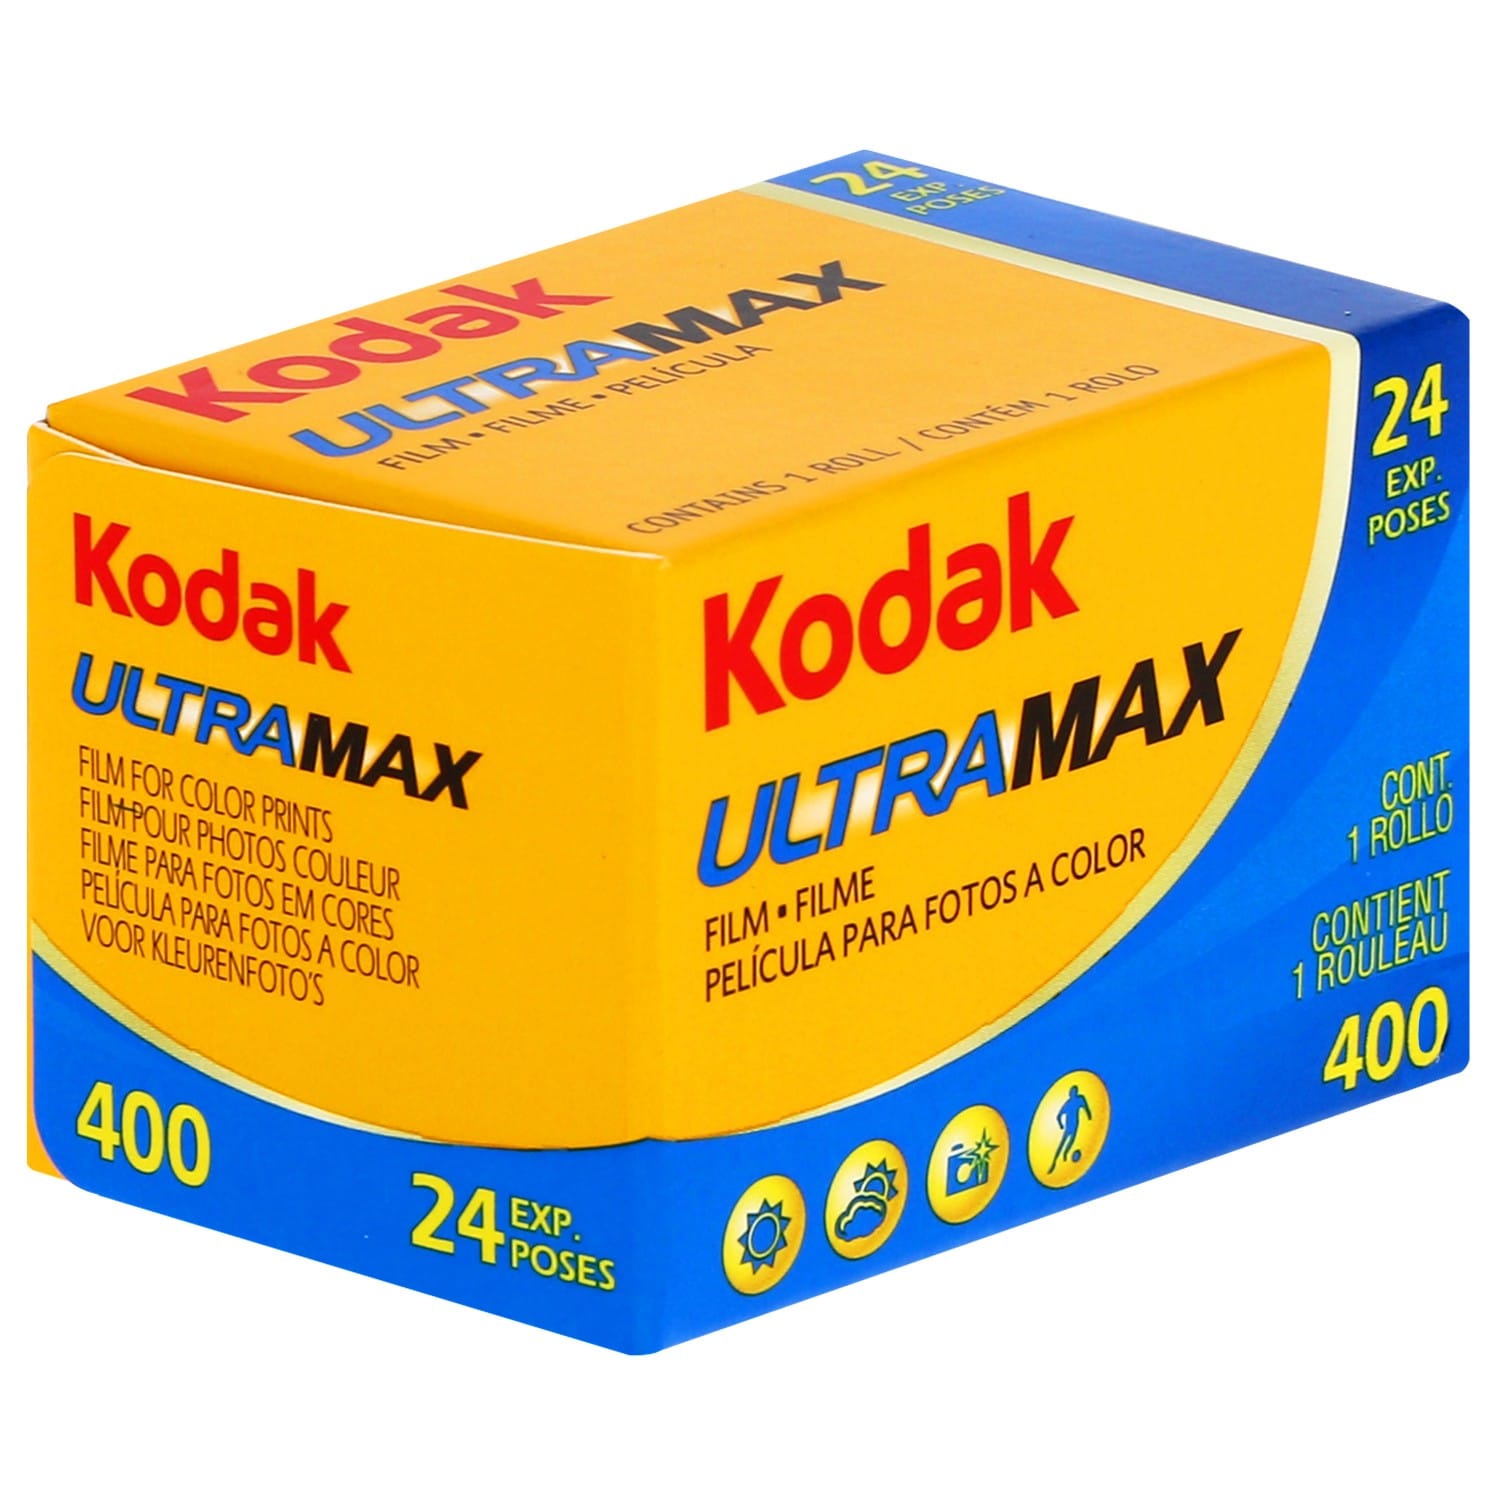 Film couleur KODAK ULTRA MAX 400 asa Format 135 - 24P - Vendu par 10